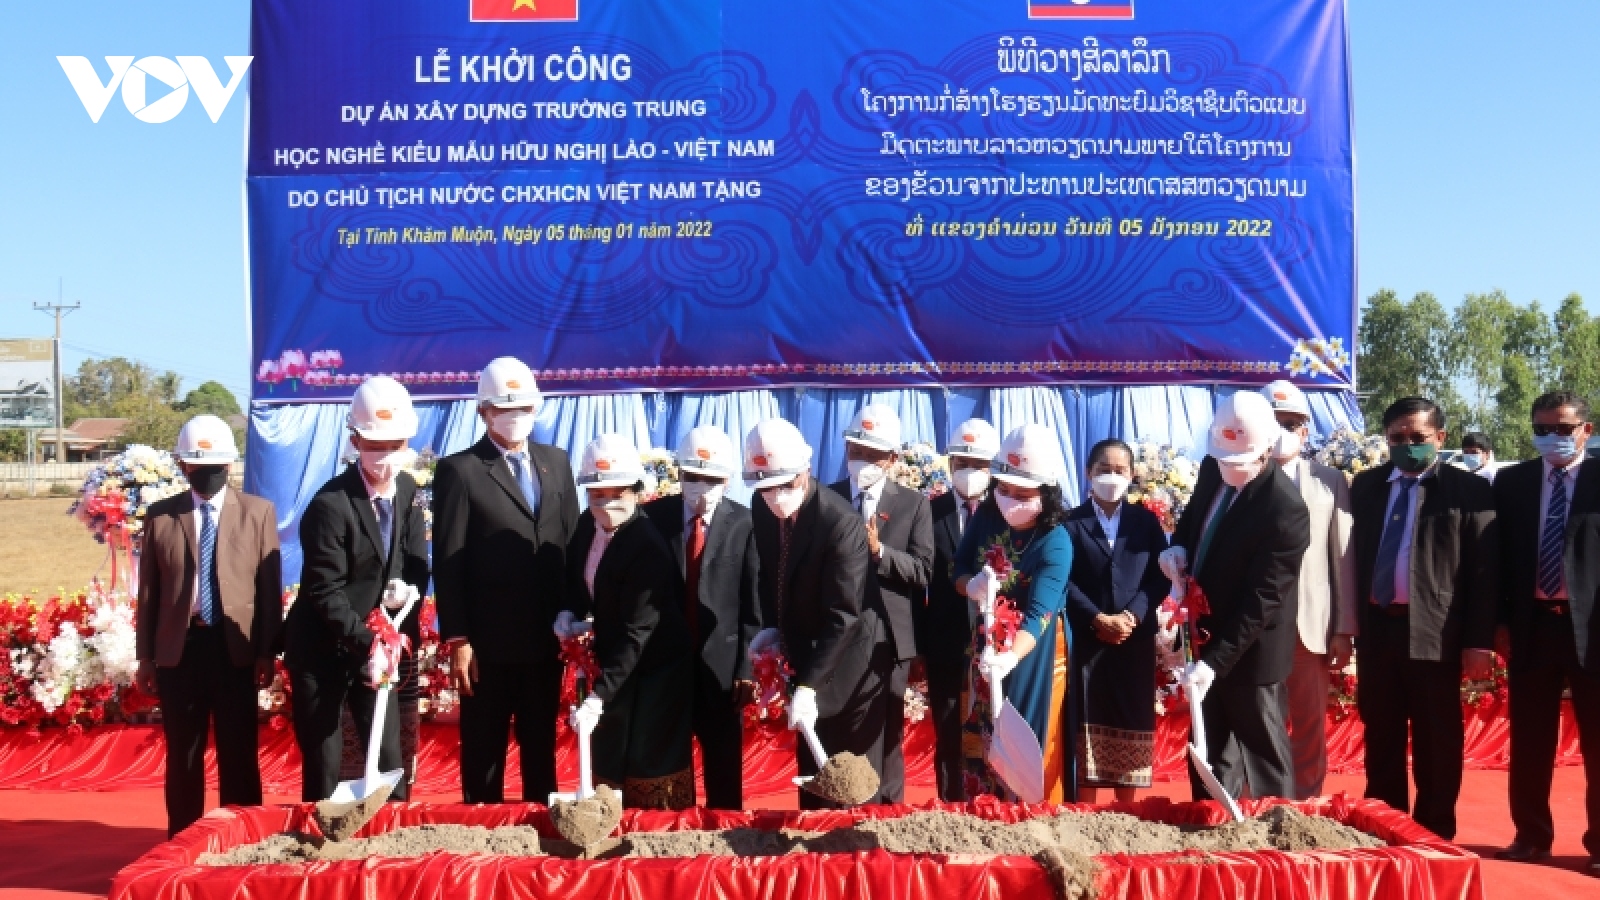 Hợp tác giáo dục - biểu tượng của mối quan hệ Việt Nam - Lào